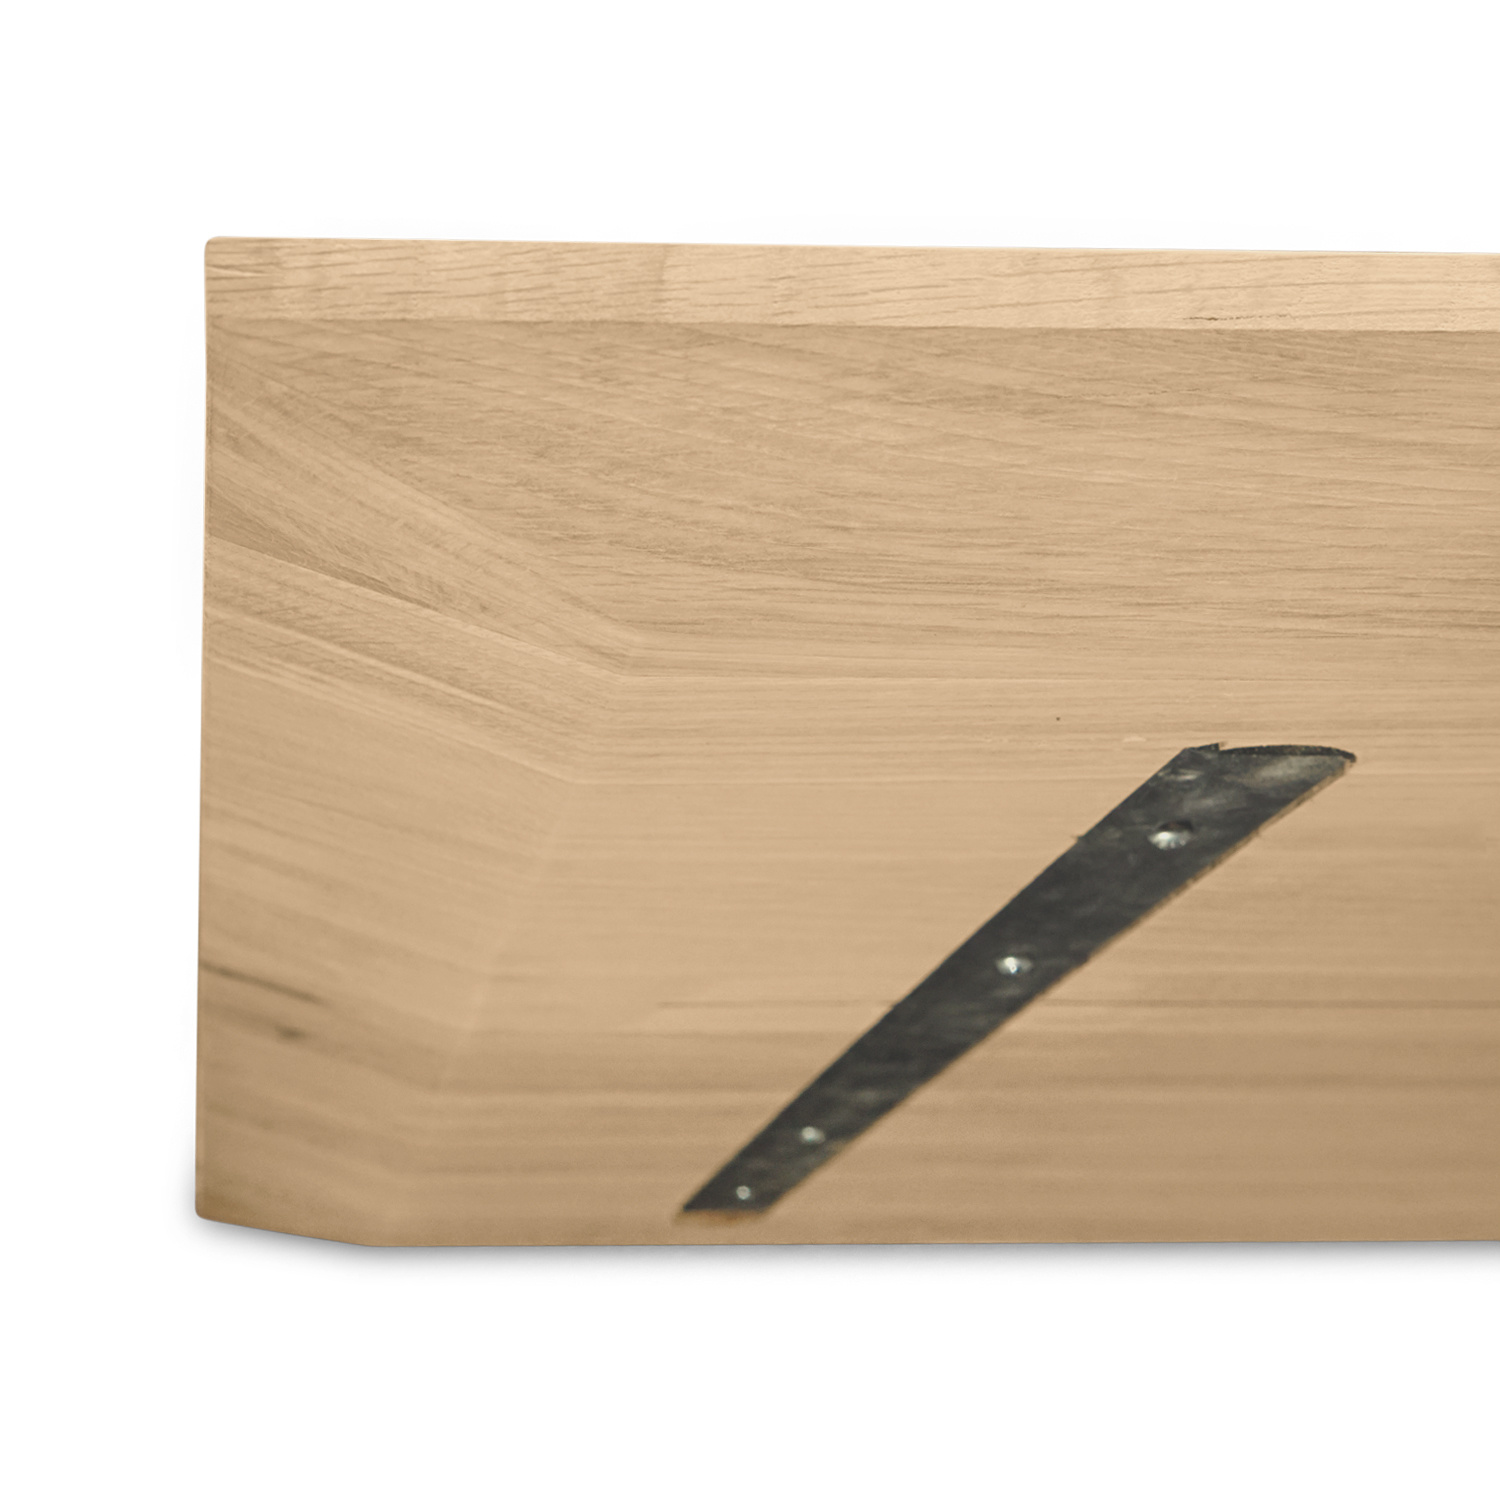  Tischplatte Eiche - Schweizer Kante - nach Maß - 4 cm dick - Eichenholz A-Qualität - Eiche Tischplatte massiv - verleimt & künstlich getrocknet (HF 8-12%) - 50-120x50-300 cm